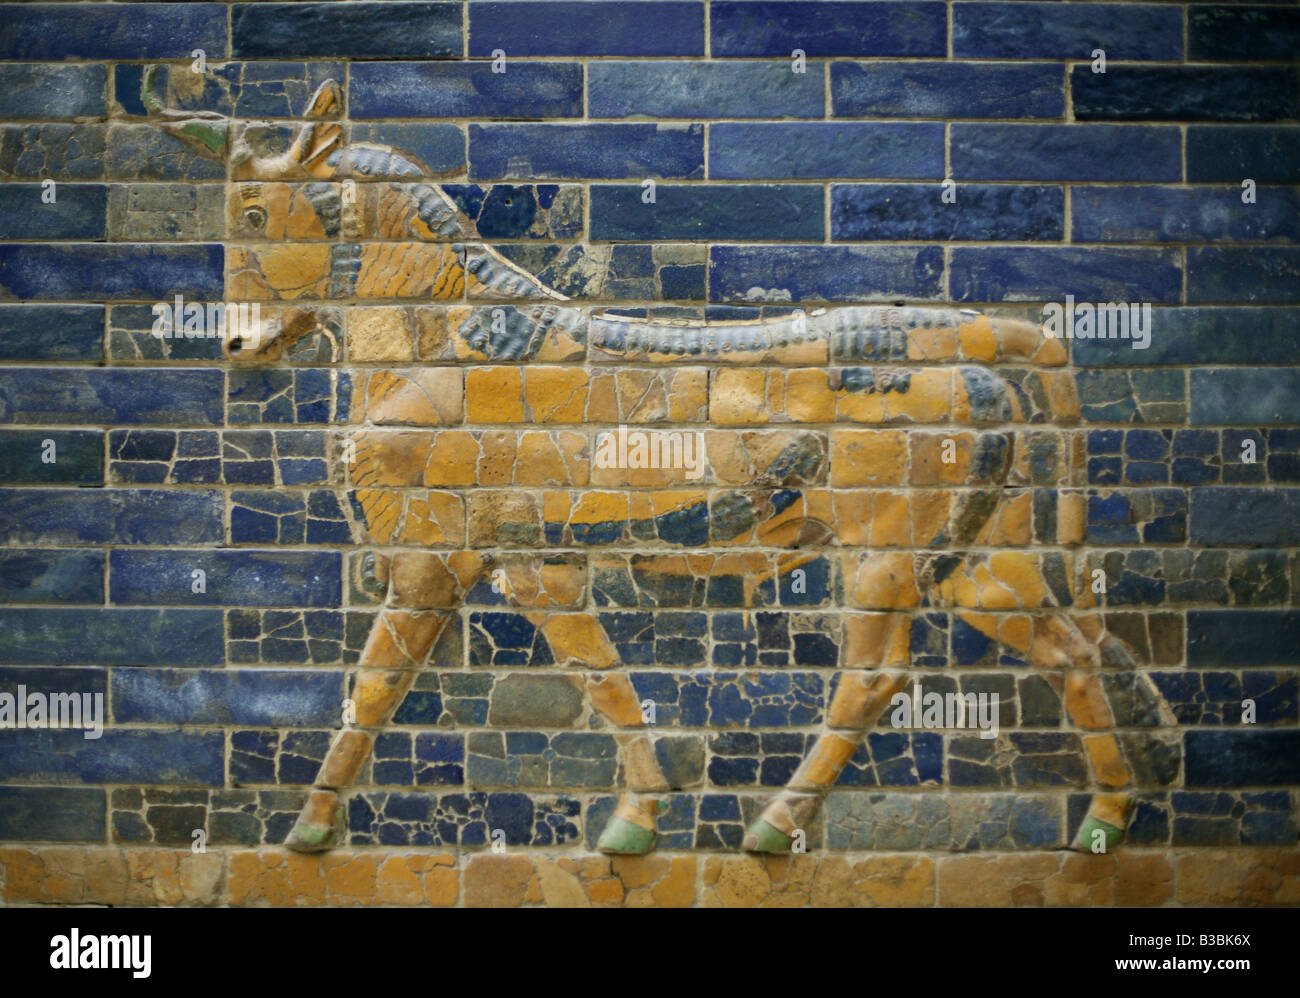 Carreaux émaillés d'un aurochs de l'Ishtar Gate dans le Musée de Pergame à Berlin, Allemagne Banque D'Images